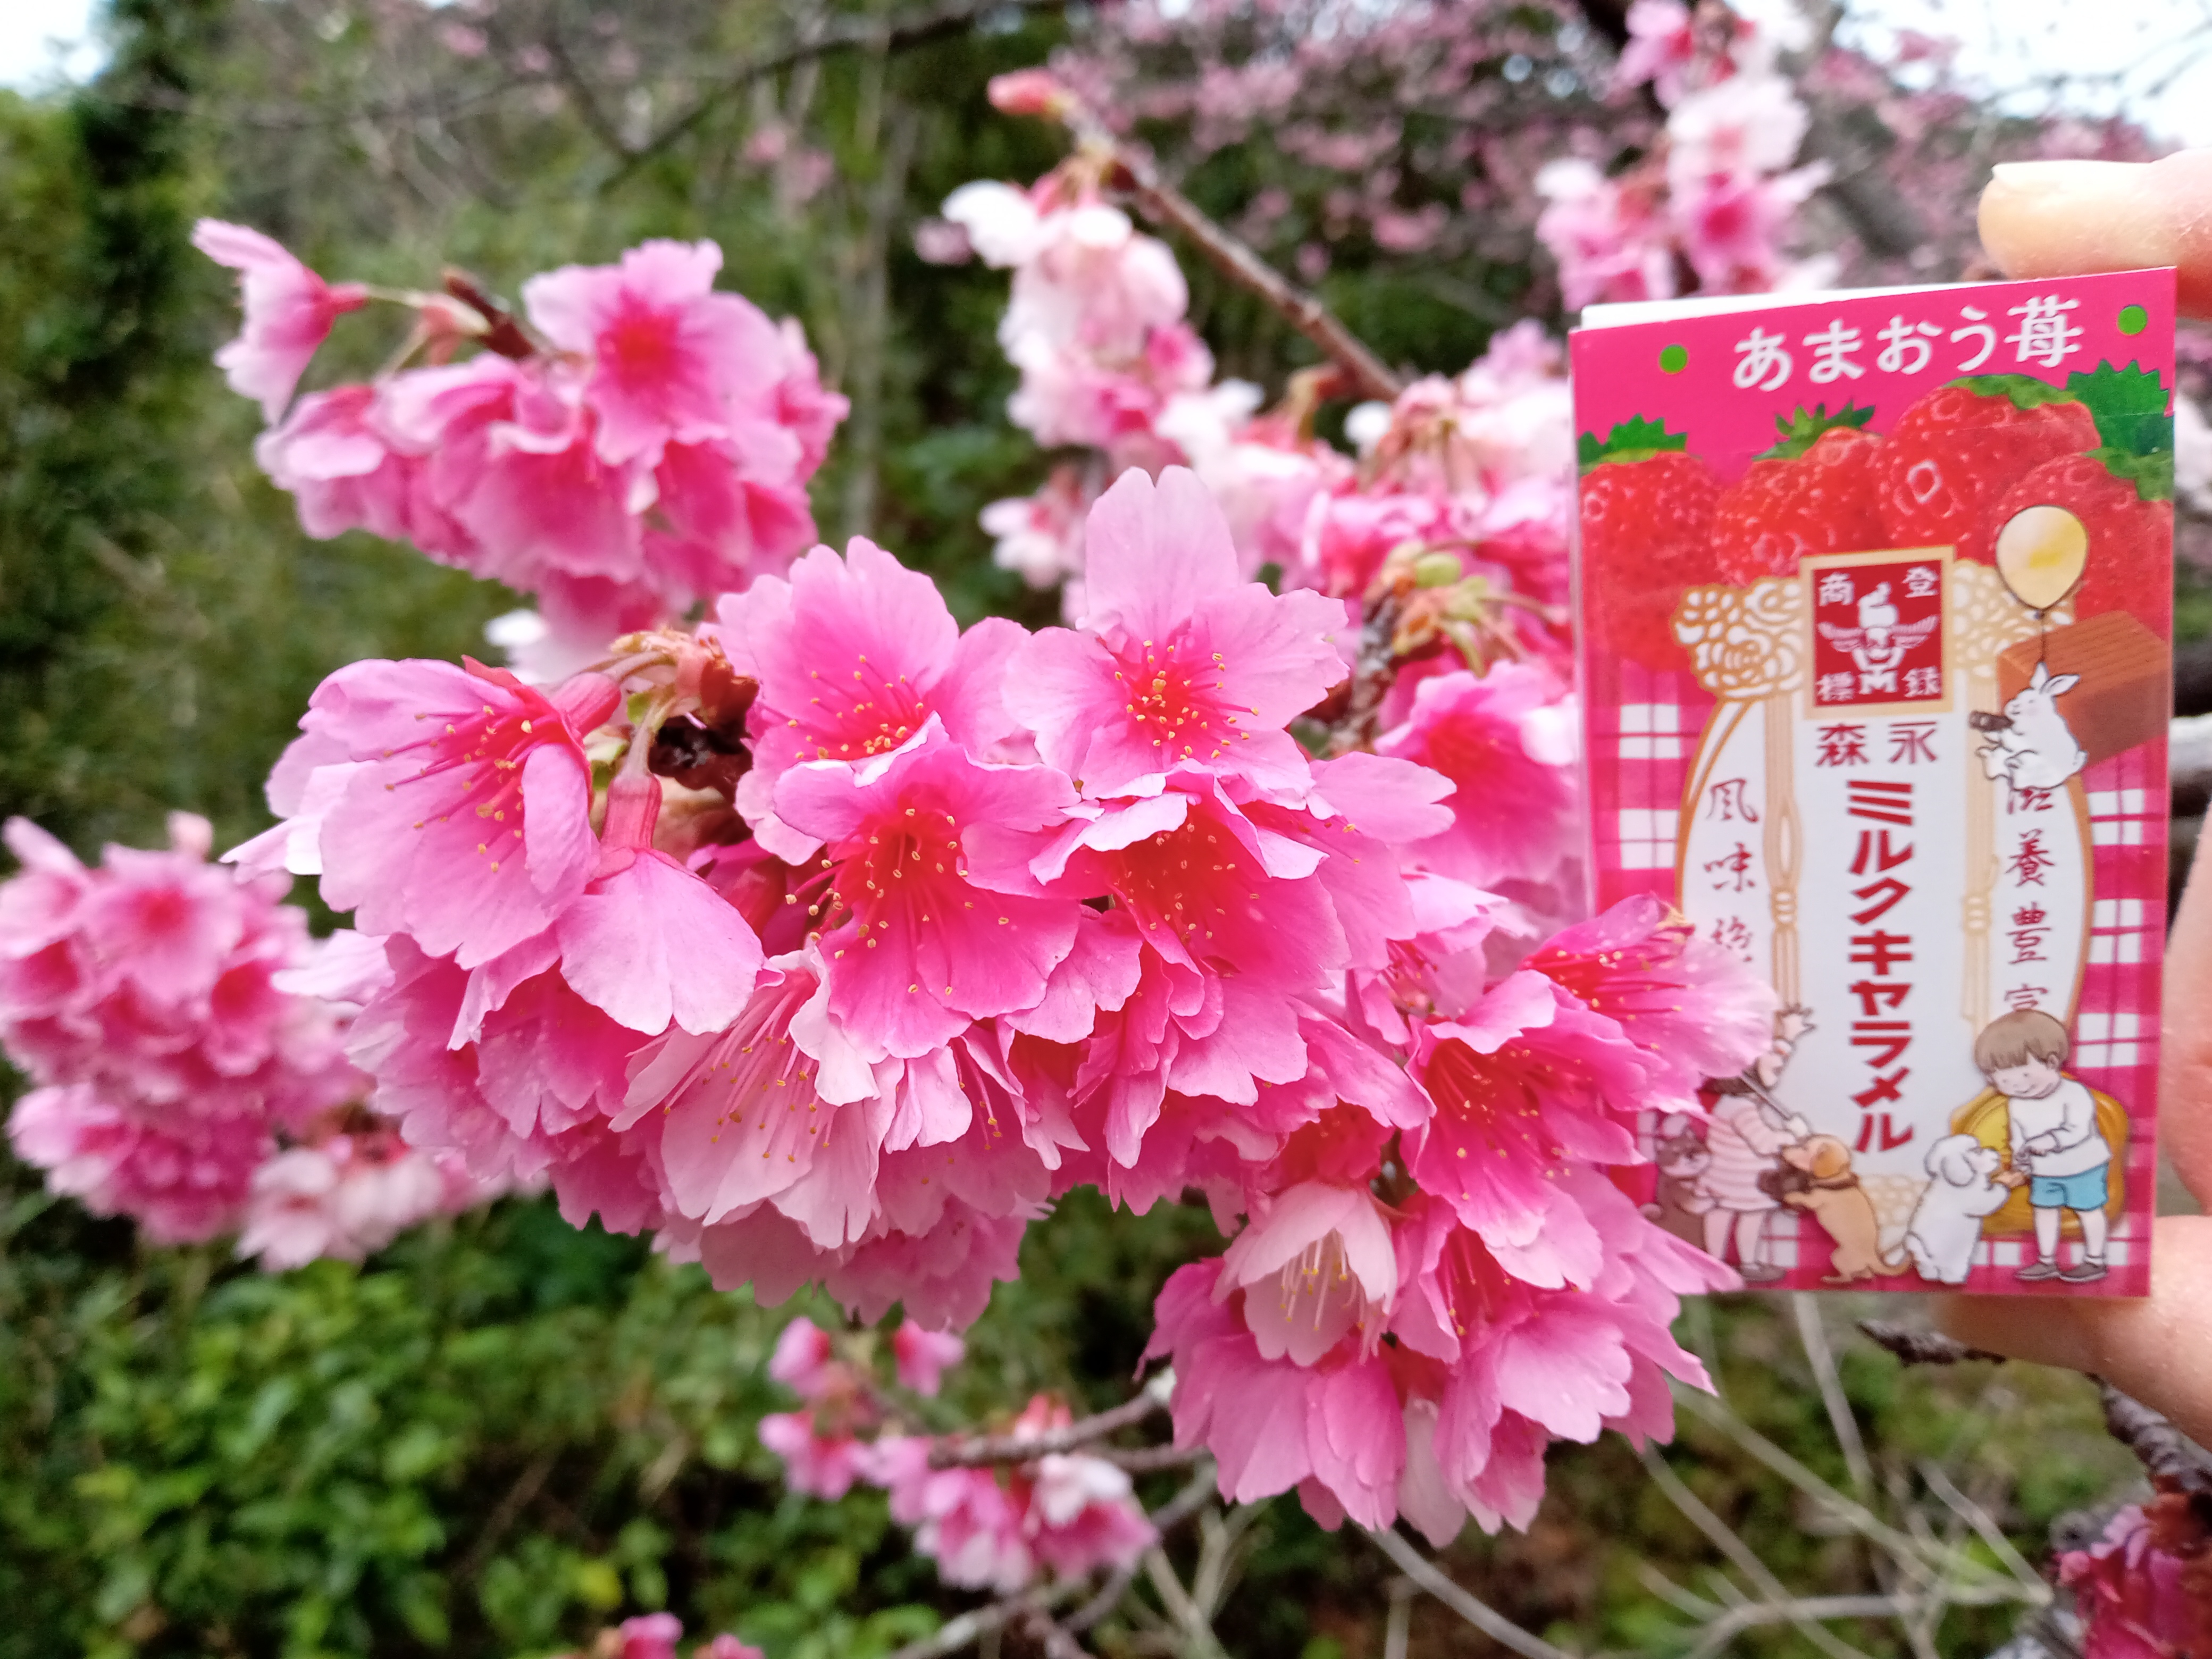 1月29日。家族でお花見に行きました。八分咲きの桜に、春の気配を感じ